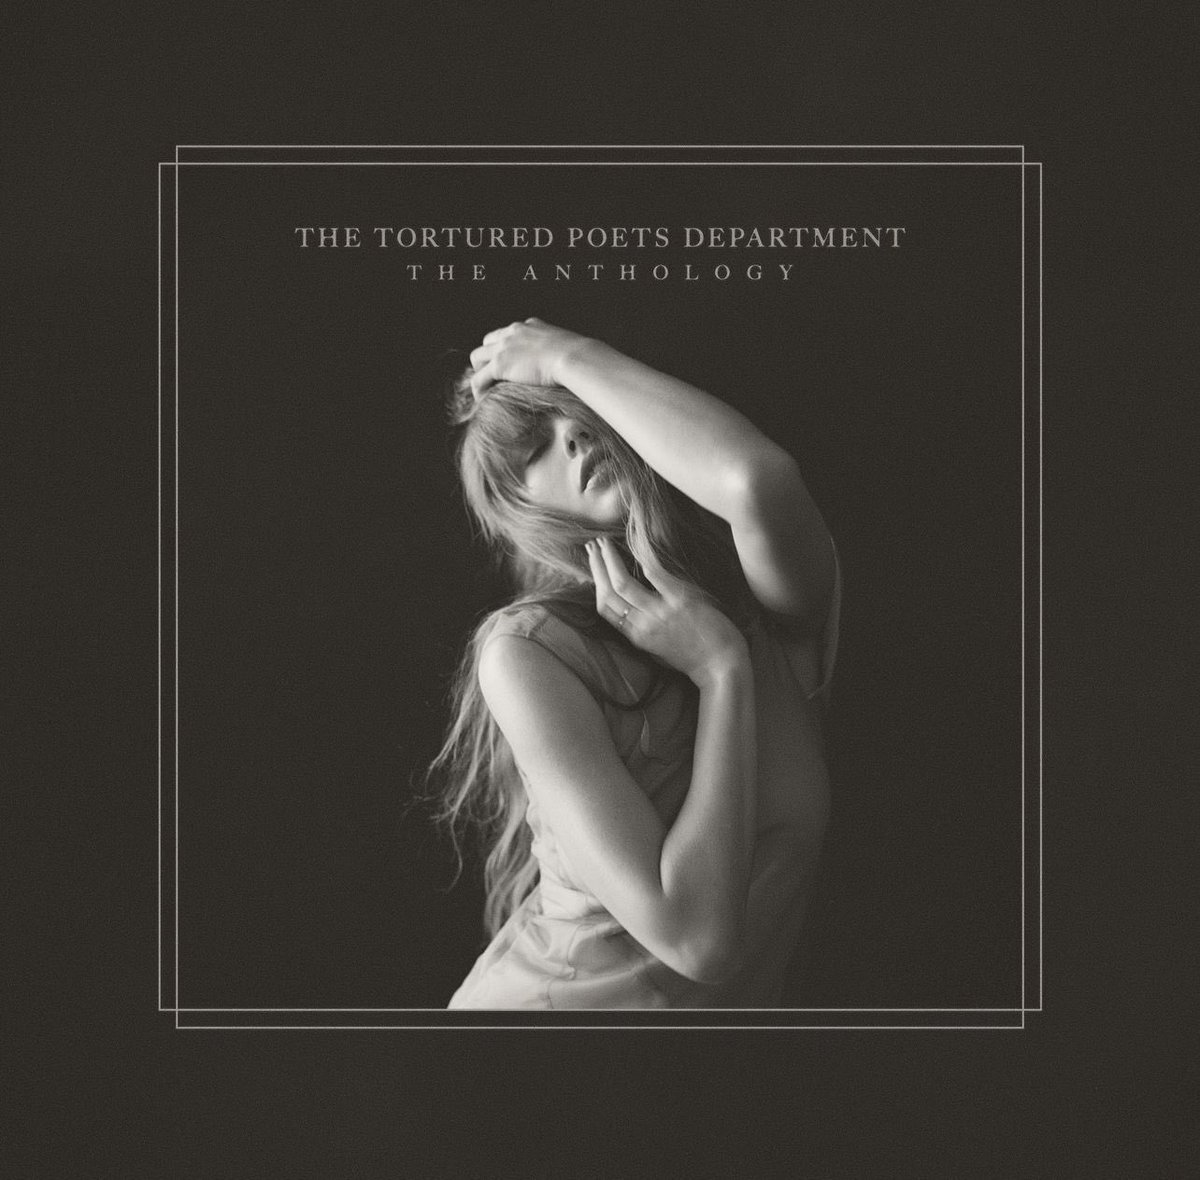 เอ้า Taylor Swift เฉลยว่ายังมี The Tortured Poets Department: The Anthology อีกค่ะ ครั้งนี้เป็นอัลบั้มคู่ มีทั้งหมด 31 เพลง ชัดแล้วว่า ✌🏻 แปลว่าอะไร open.spotify.com/album/5H7ixXZf…